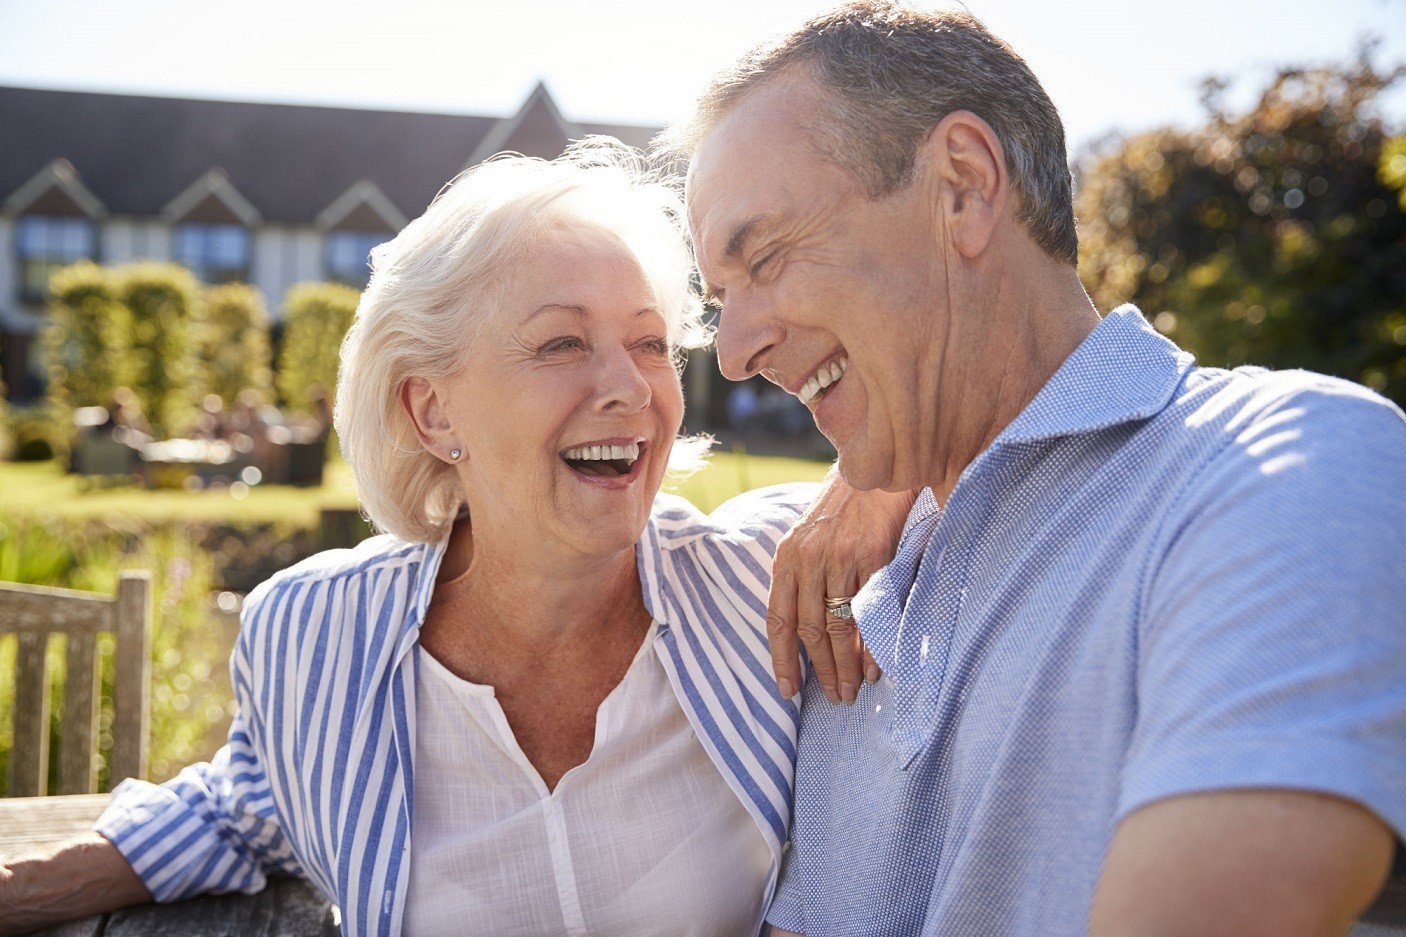 Le couple à la retraite. Pourquoi tant de couples se séparent au cours des premières années de la retraite? Comment éviter ce risque?